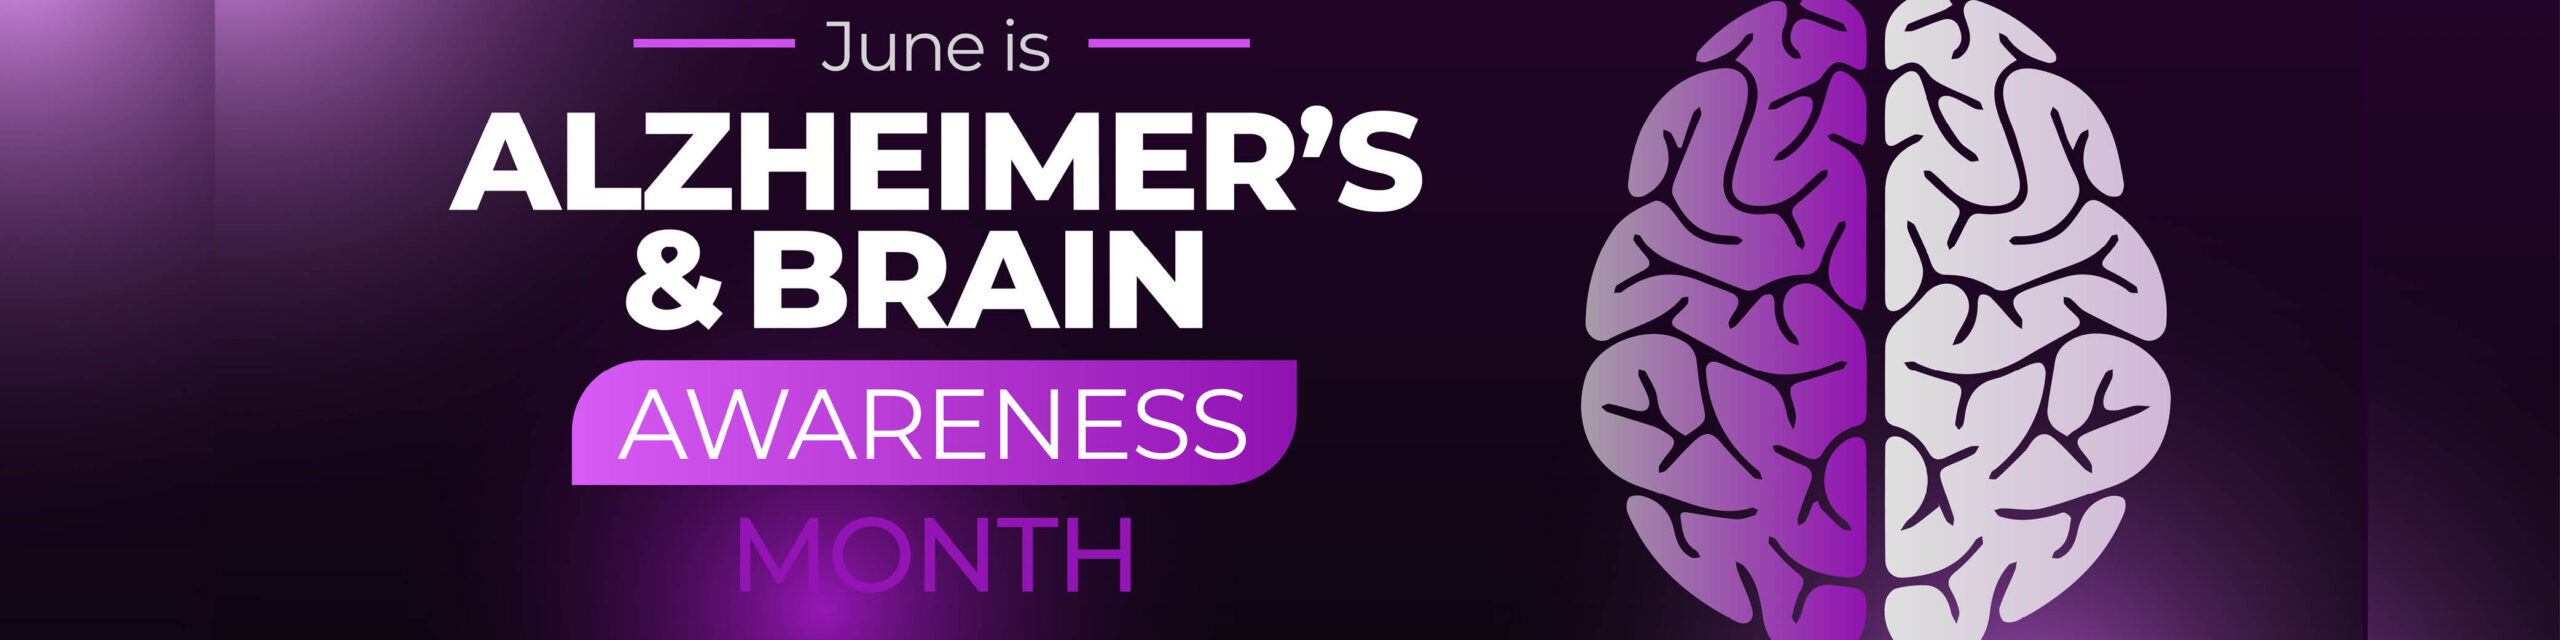 NCh alzheimers awareness month